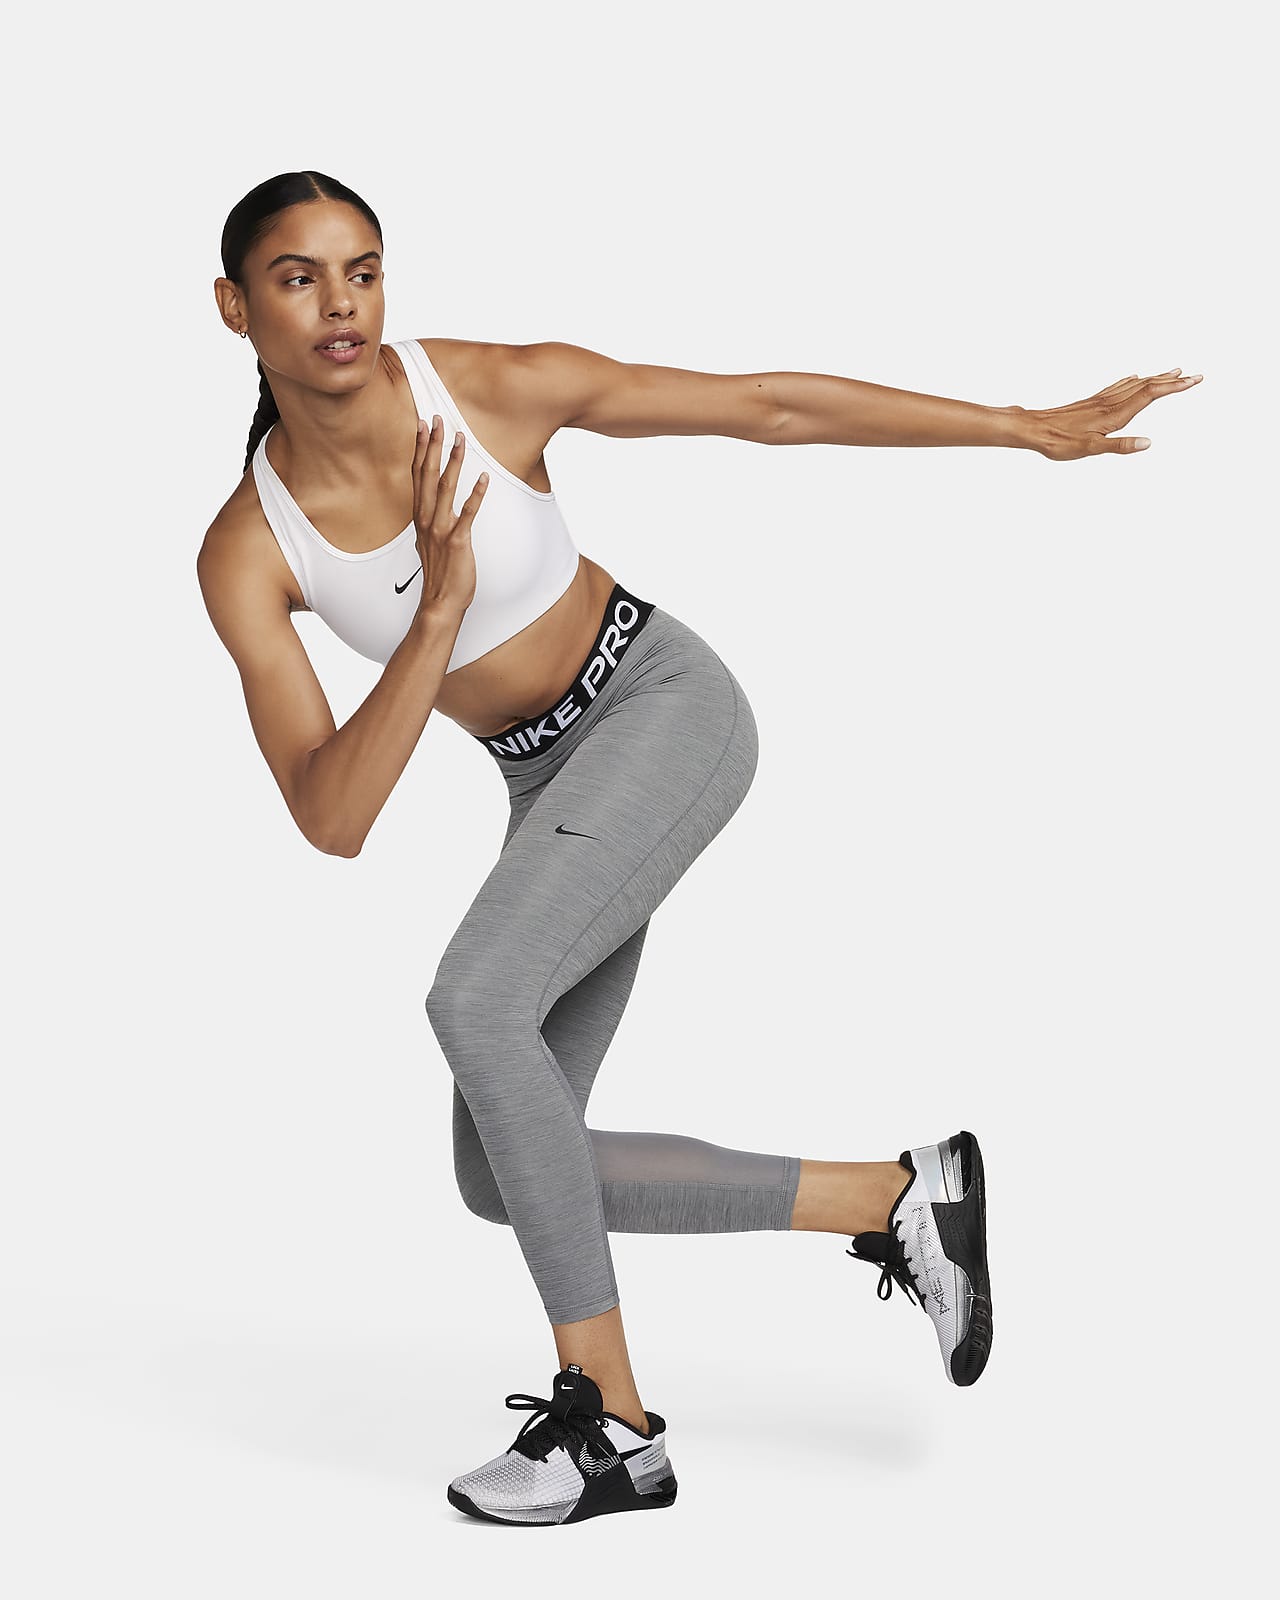 Leggings a 7/8 com grafismo de cintura normal Nike Pro para mulher